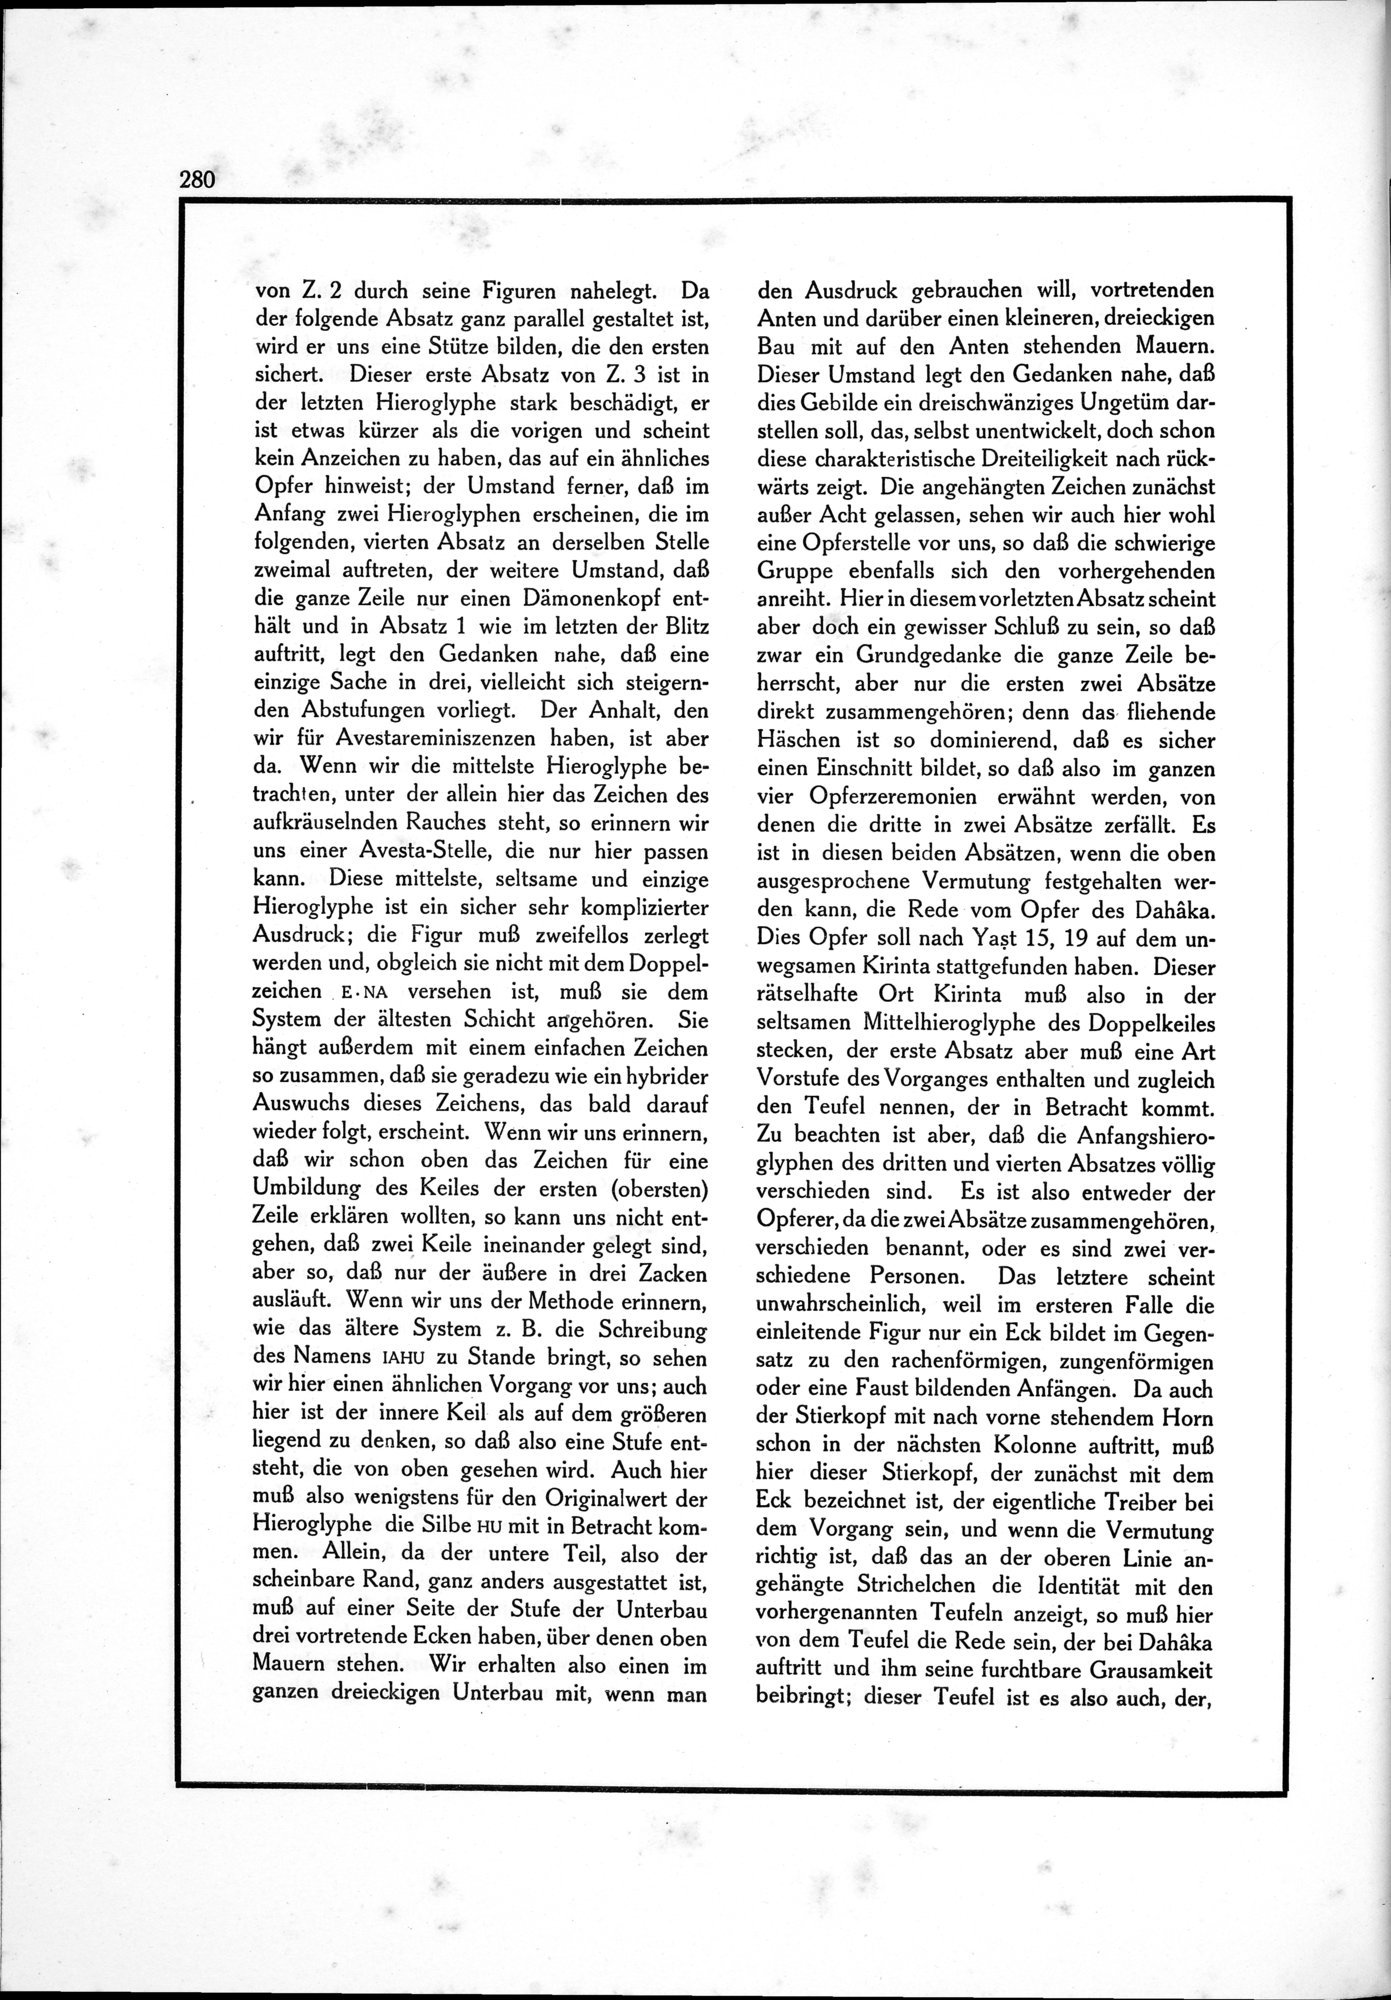 Die Teufel des Avesta und Ihre Beziehungen zur Ikonographie des Buddhismus Zentral-Asiens : vol.1 / Page 284 (Grayscale High Resolution Image)